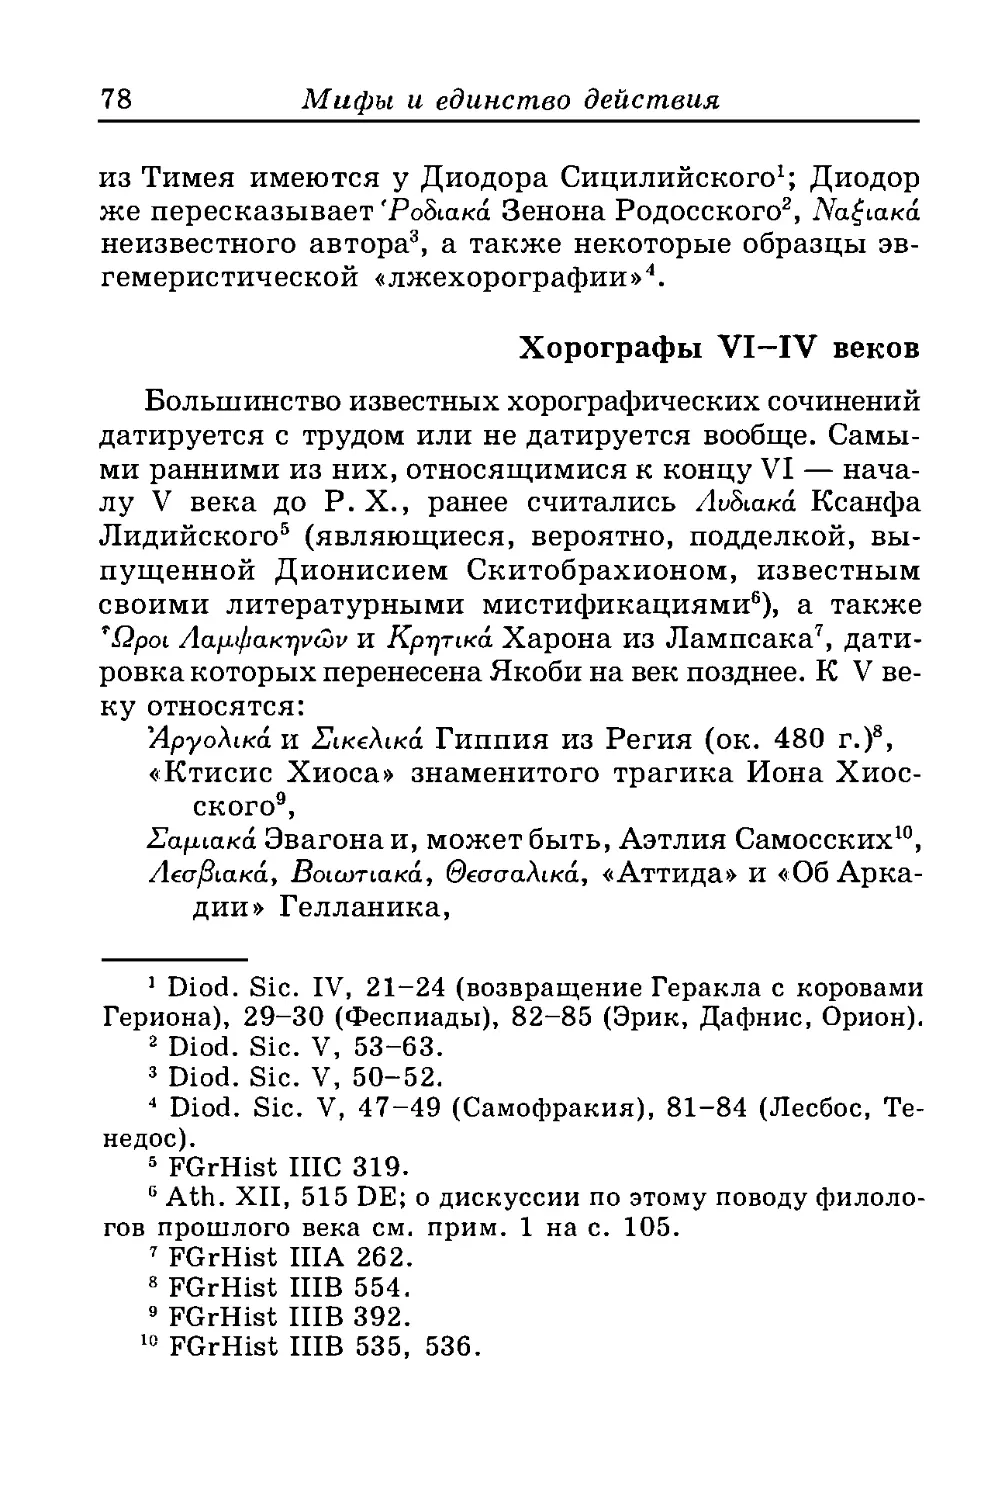 ﻿Хорографы VI -IV веко